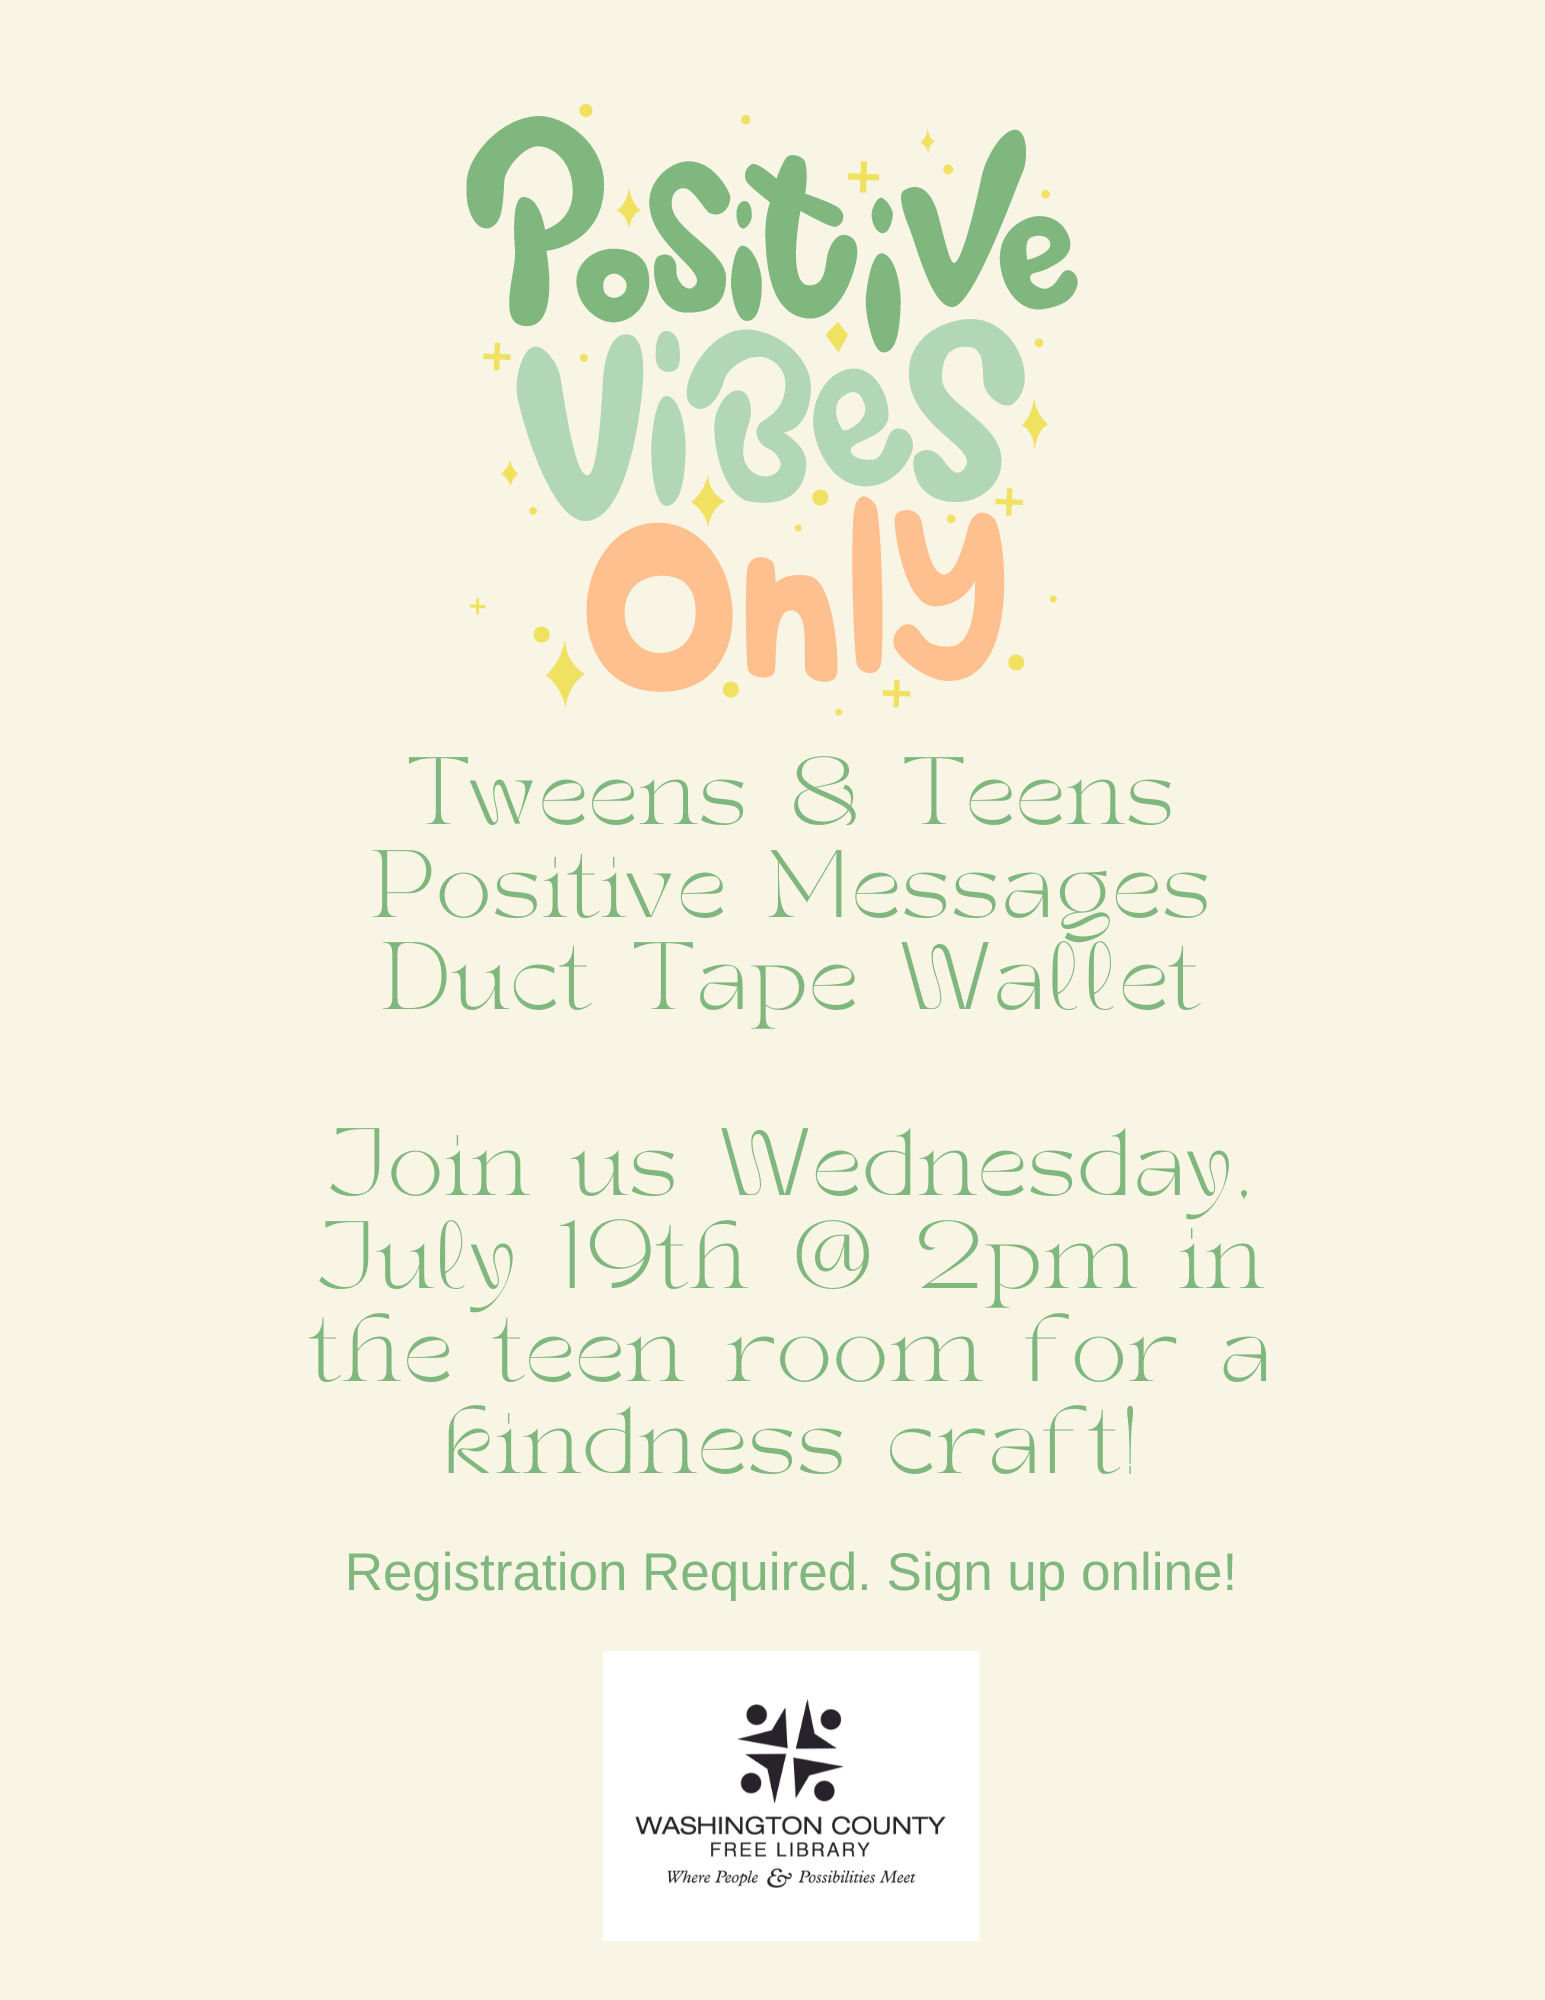 Tween & Teens Duct Tape Wallet